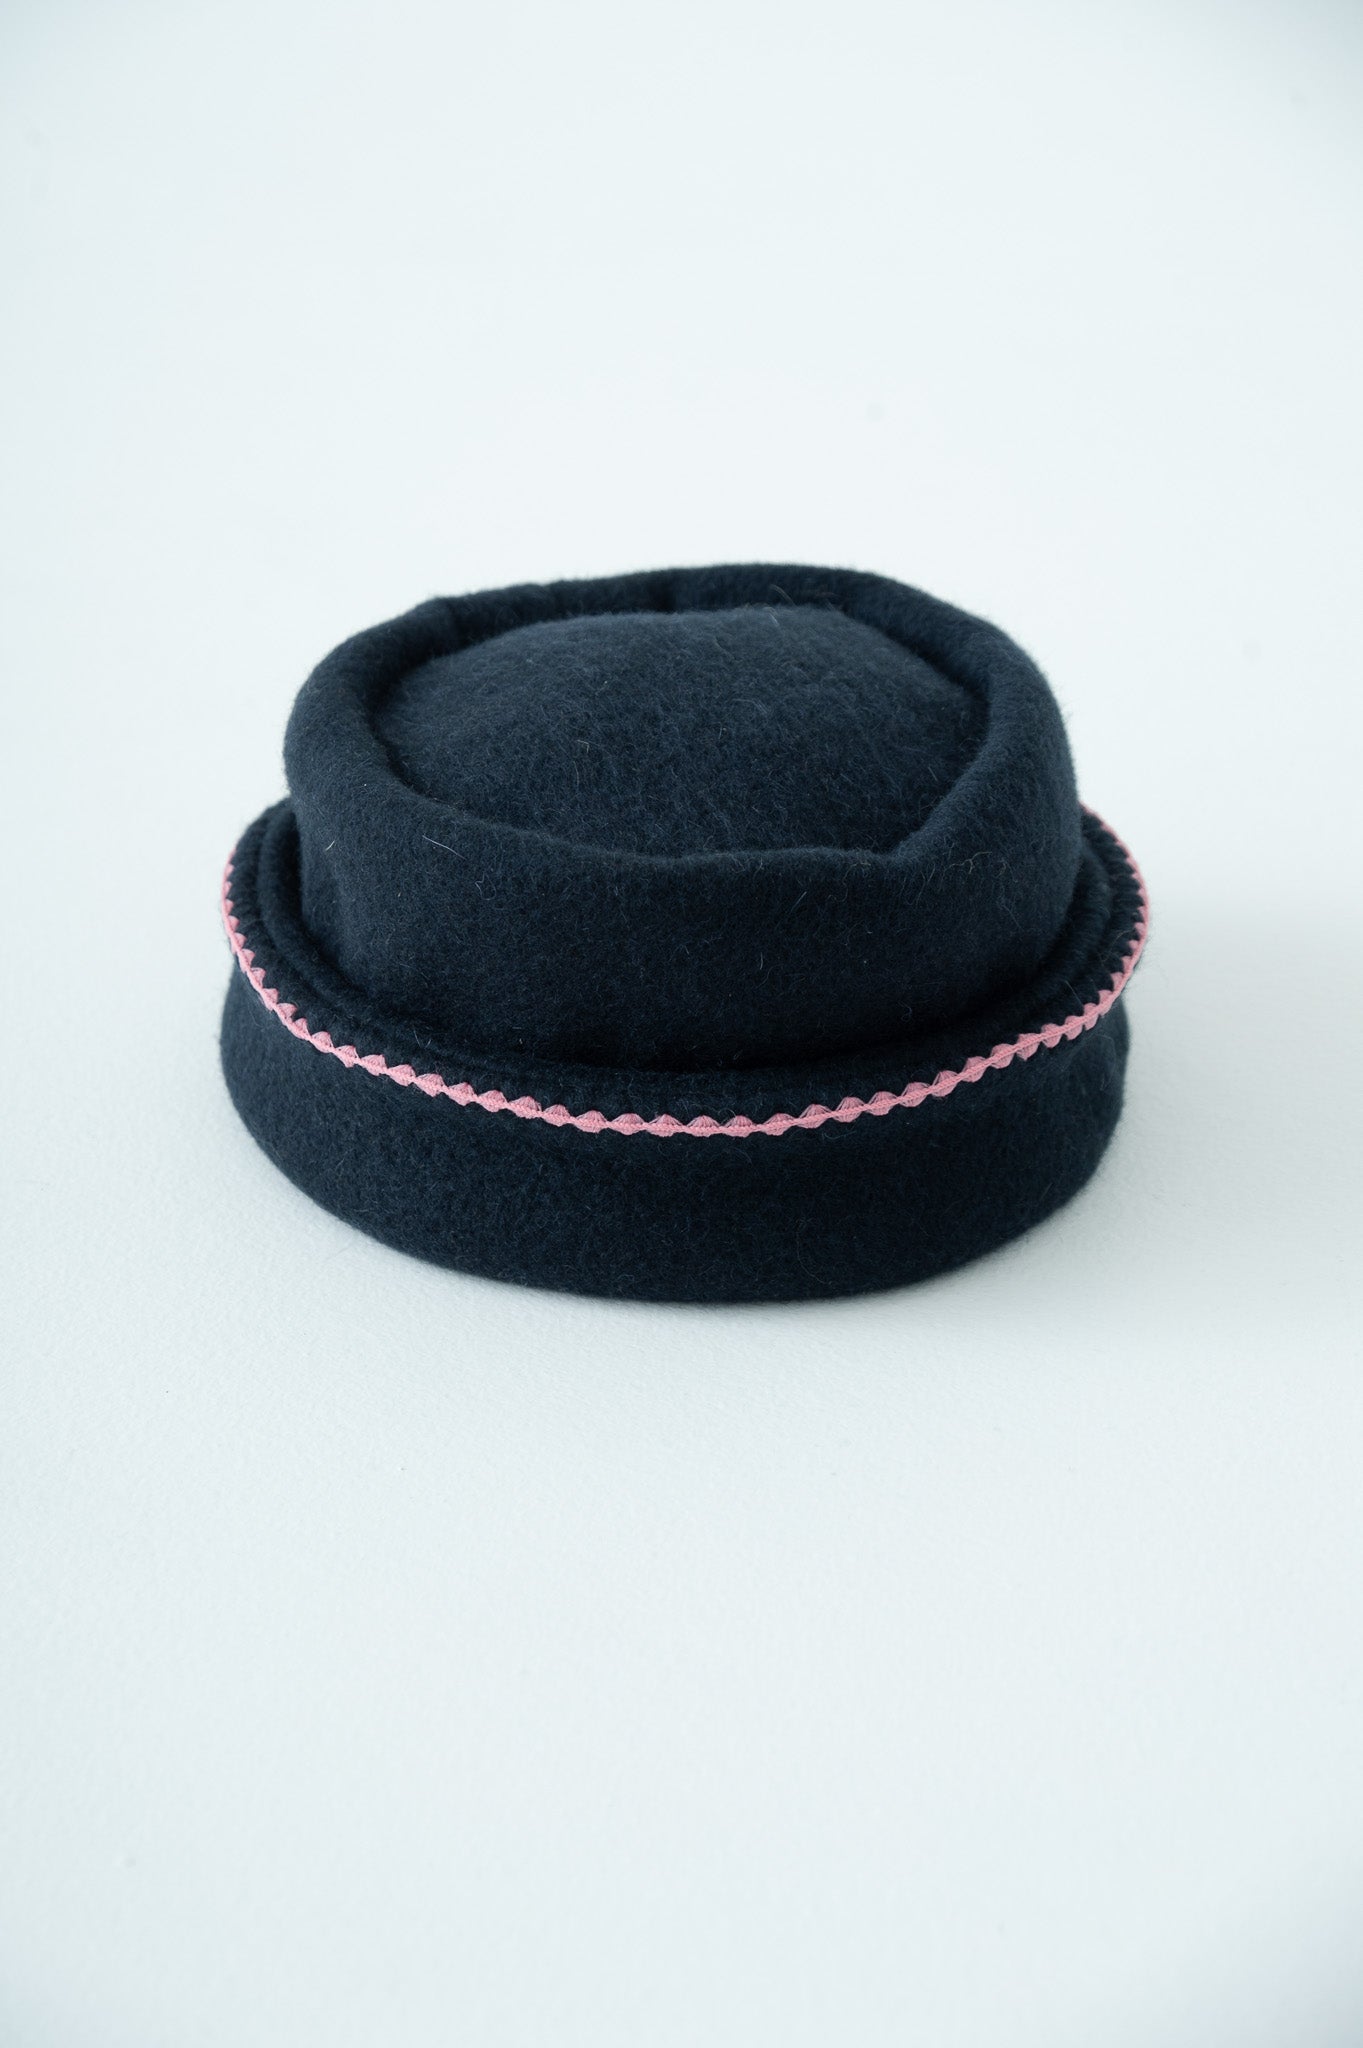 needlework toque hat midnight × pink